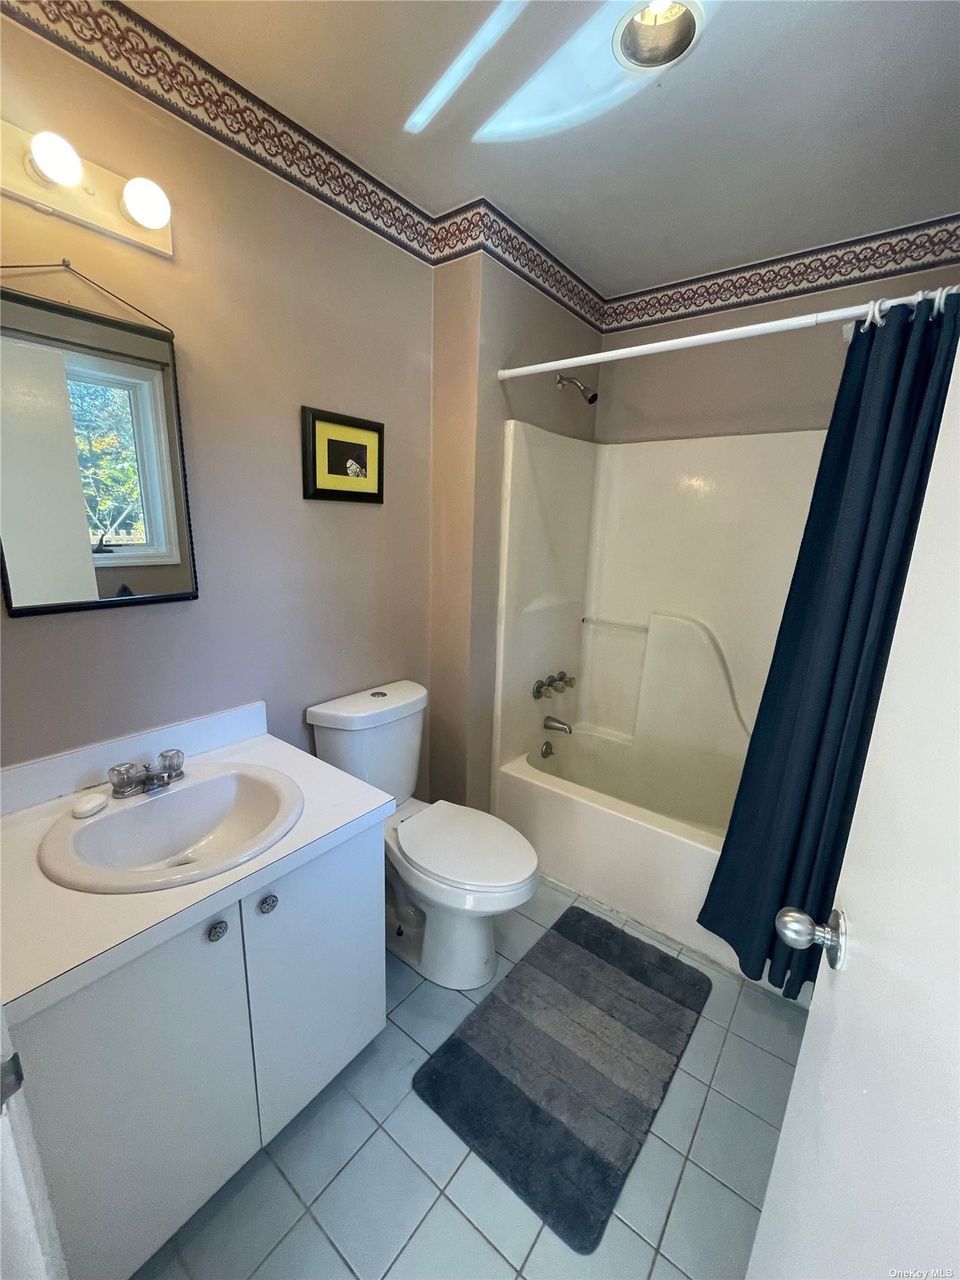 豪华浴室拥有光滑的内置浴缸适合浸泡,和一个时髦的窗帘,可以创建一个私人避难所。